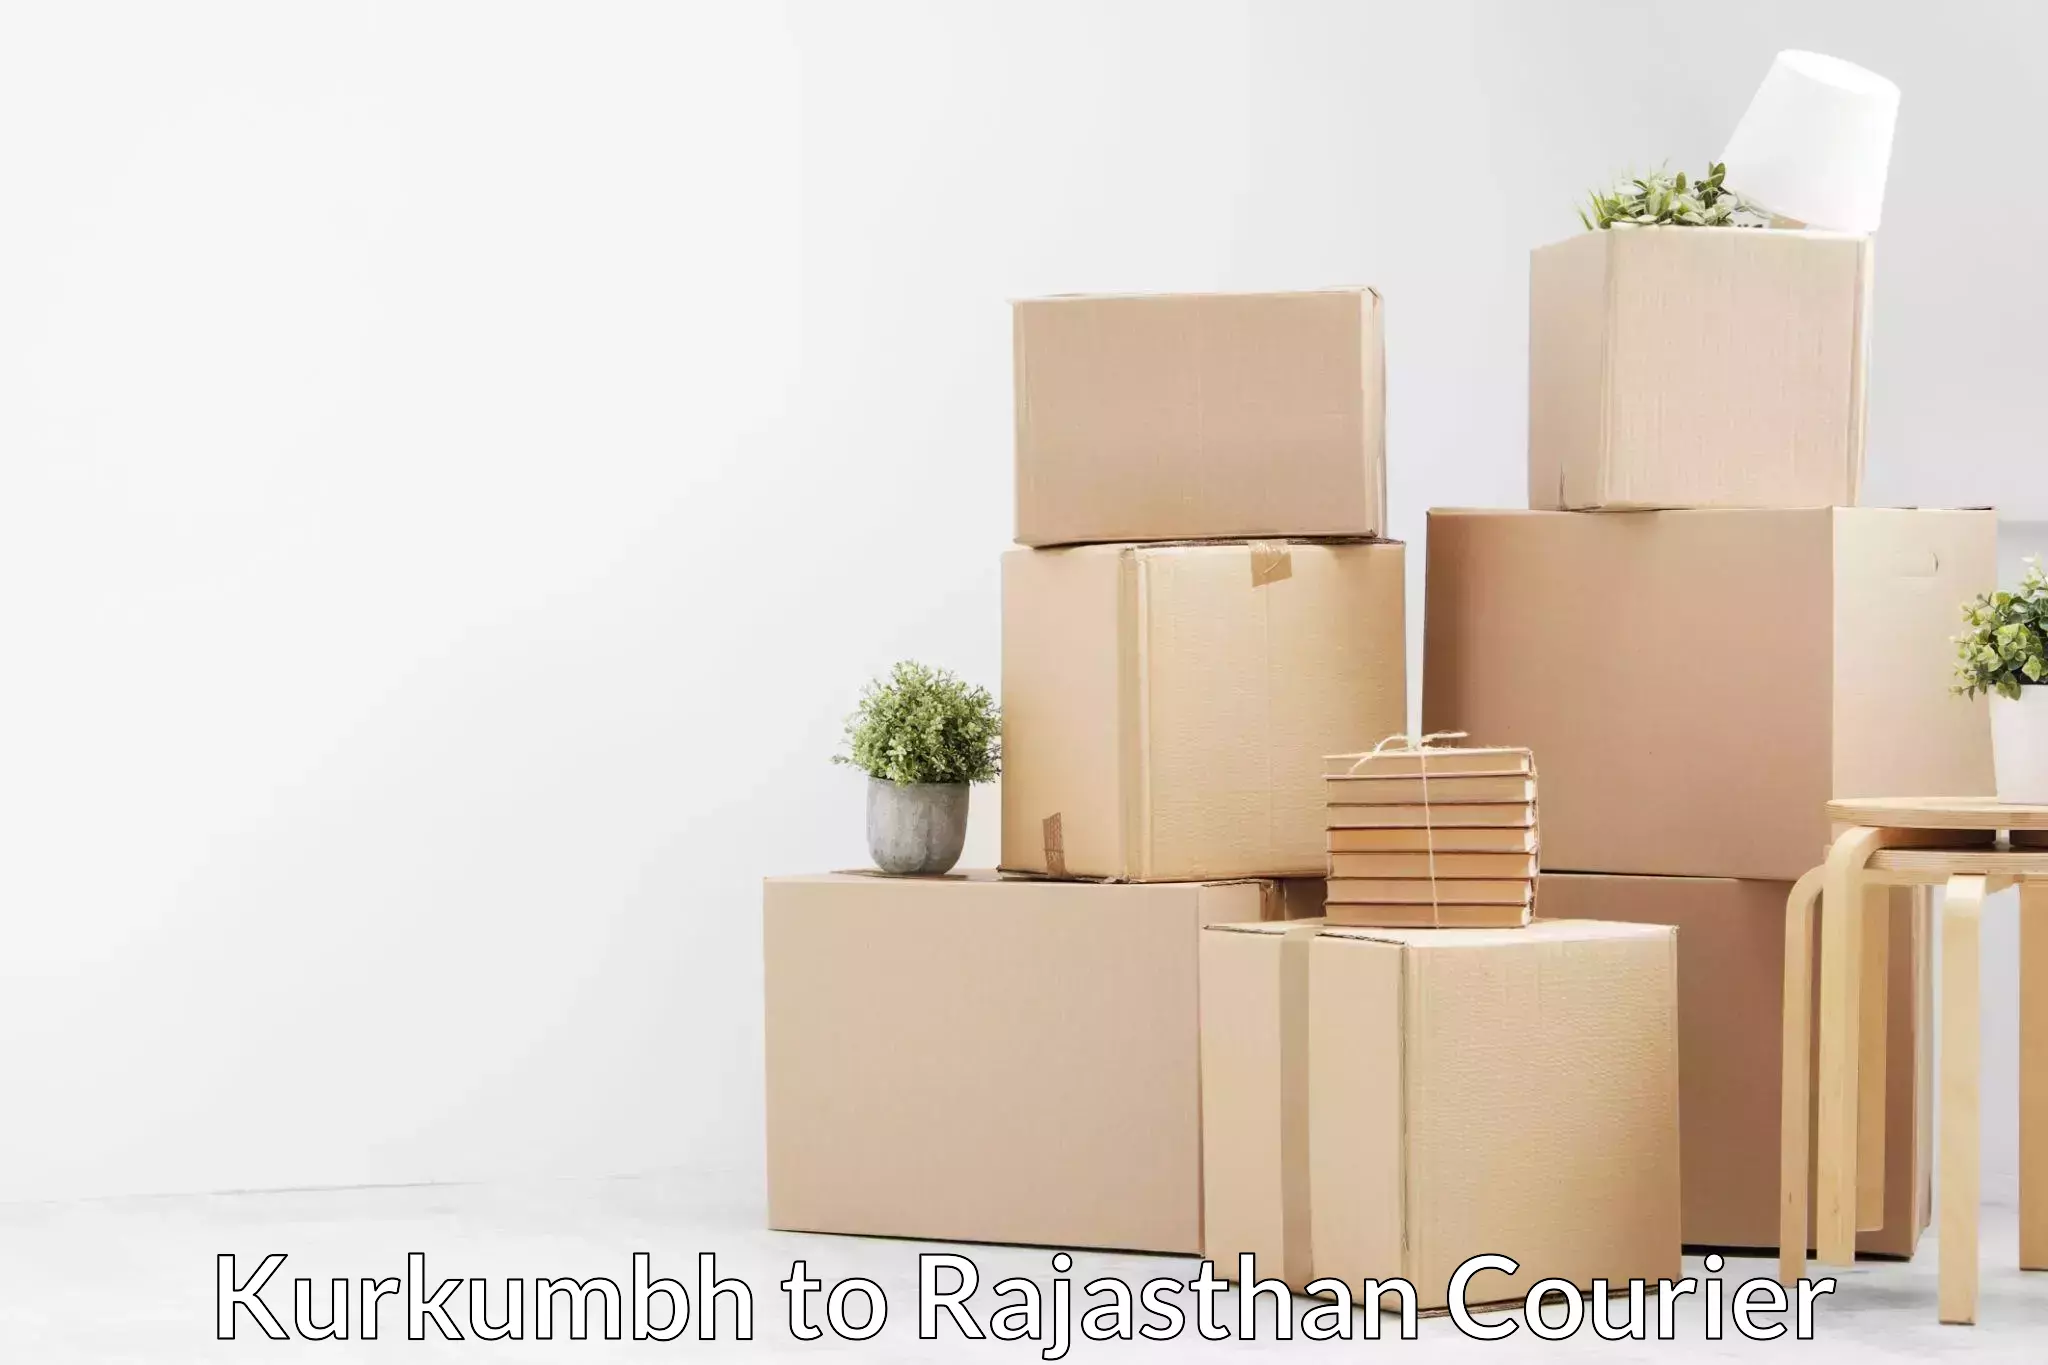 Professional movers Kurkumbh to Piparcity